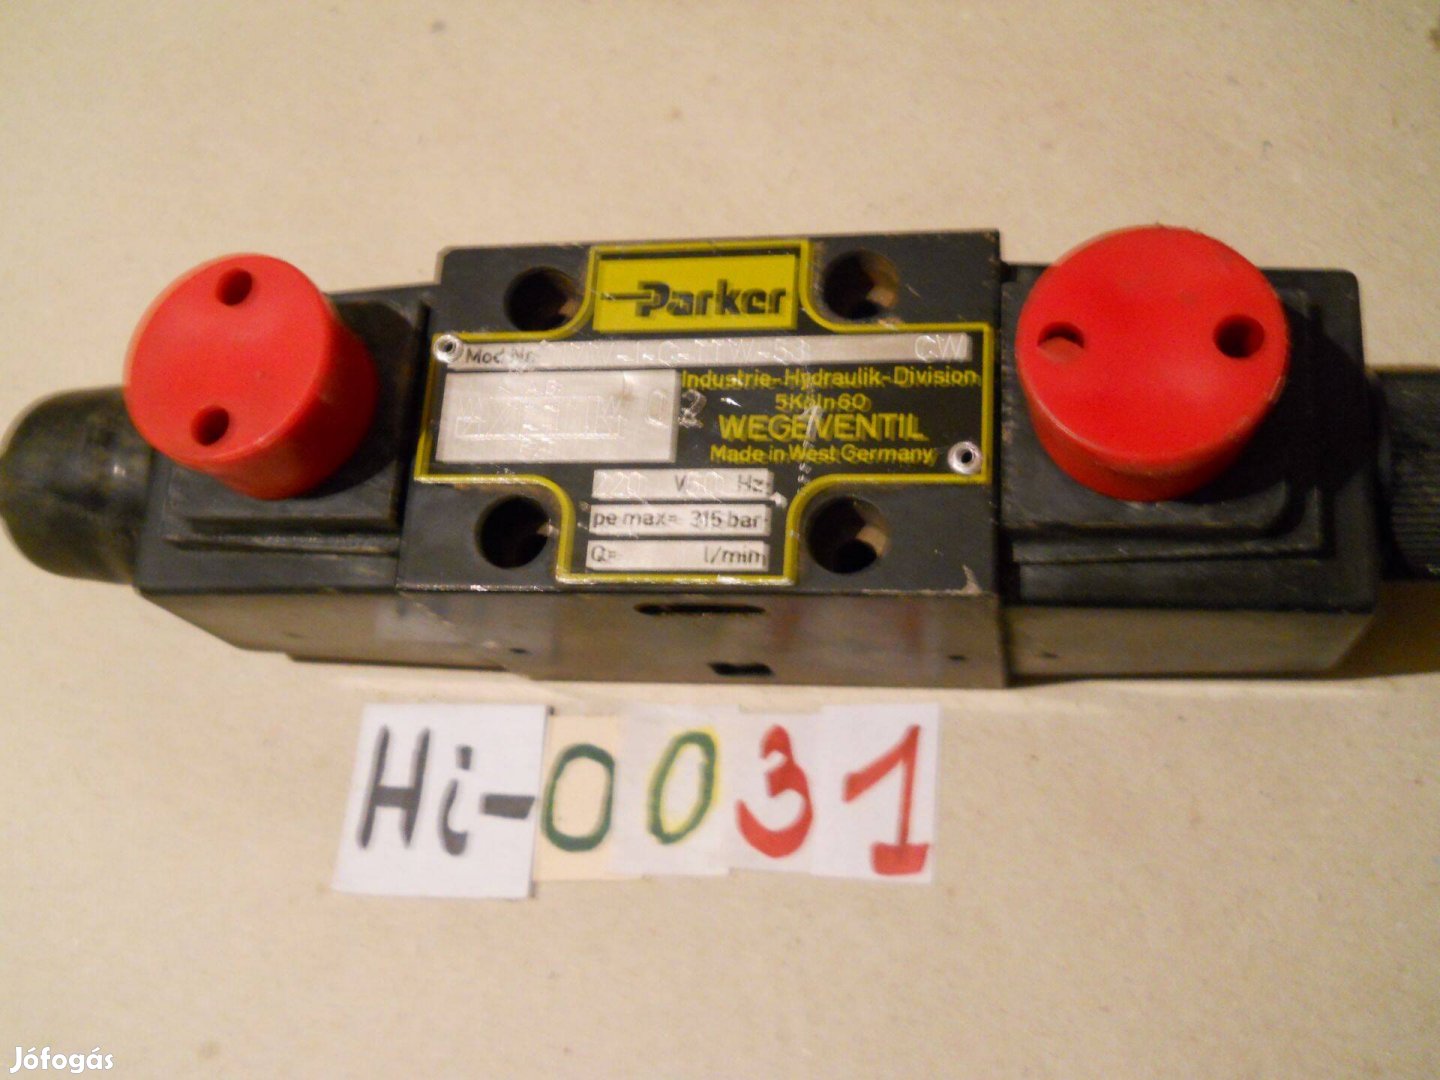 Hidraulikus útváltószelep eladó (Parker) (Hi-0031)